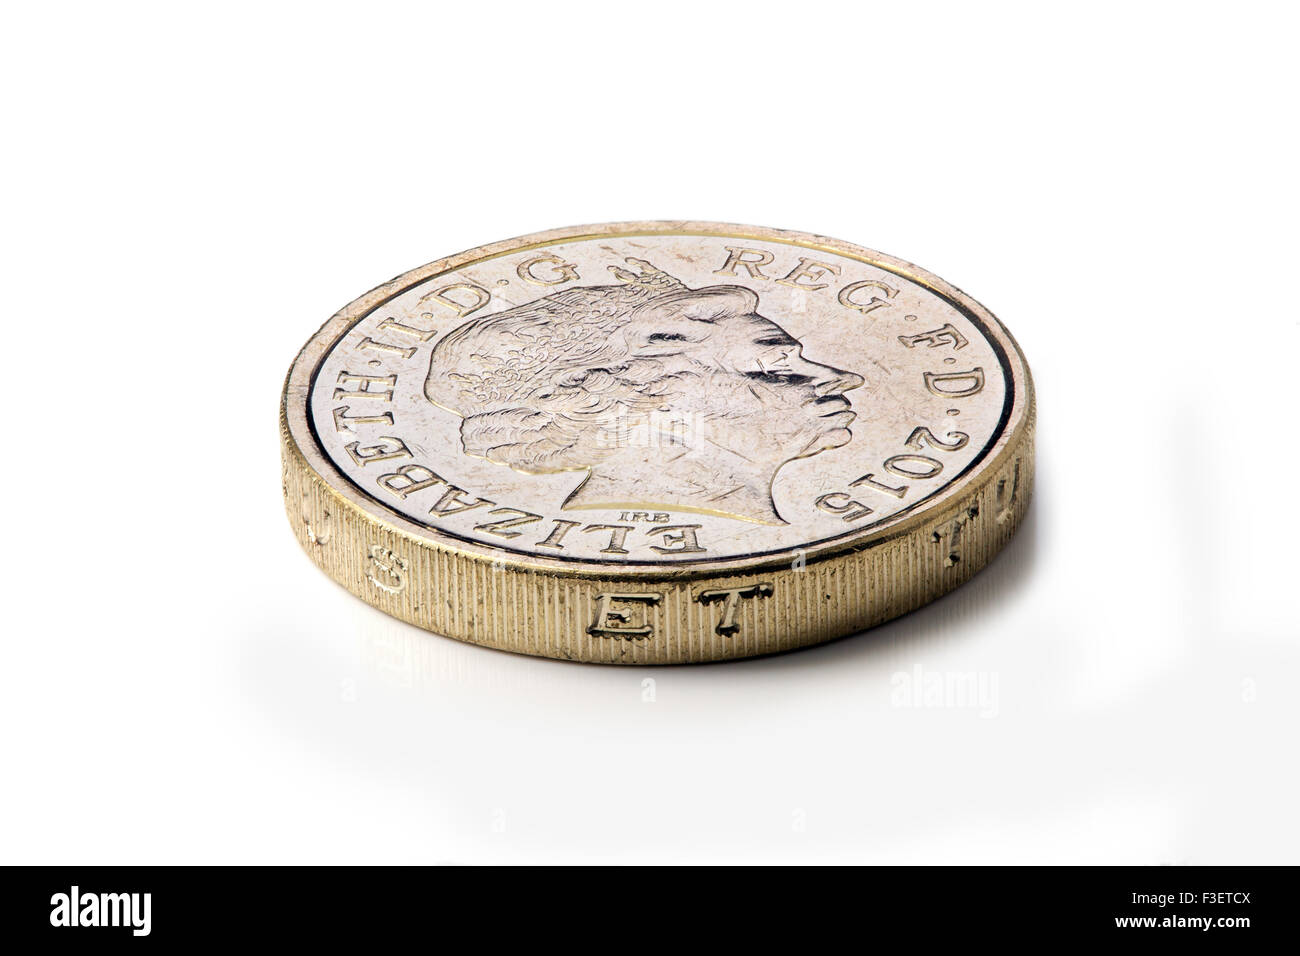 1 pound UK  coin Stock Photo